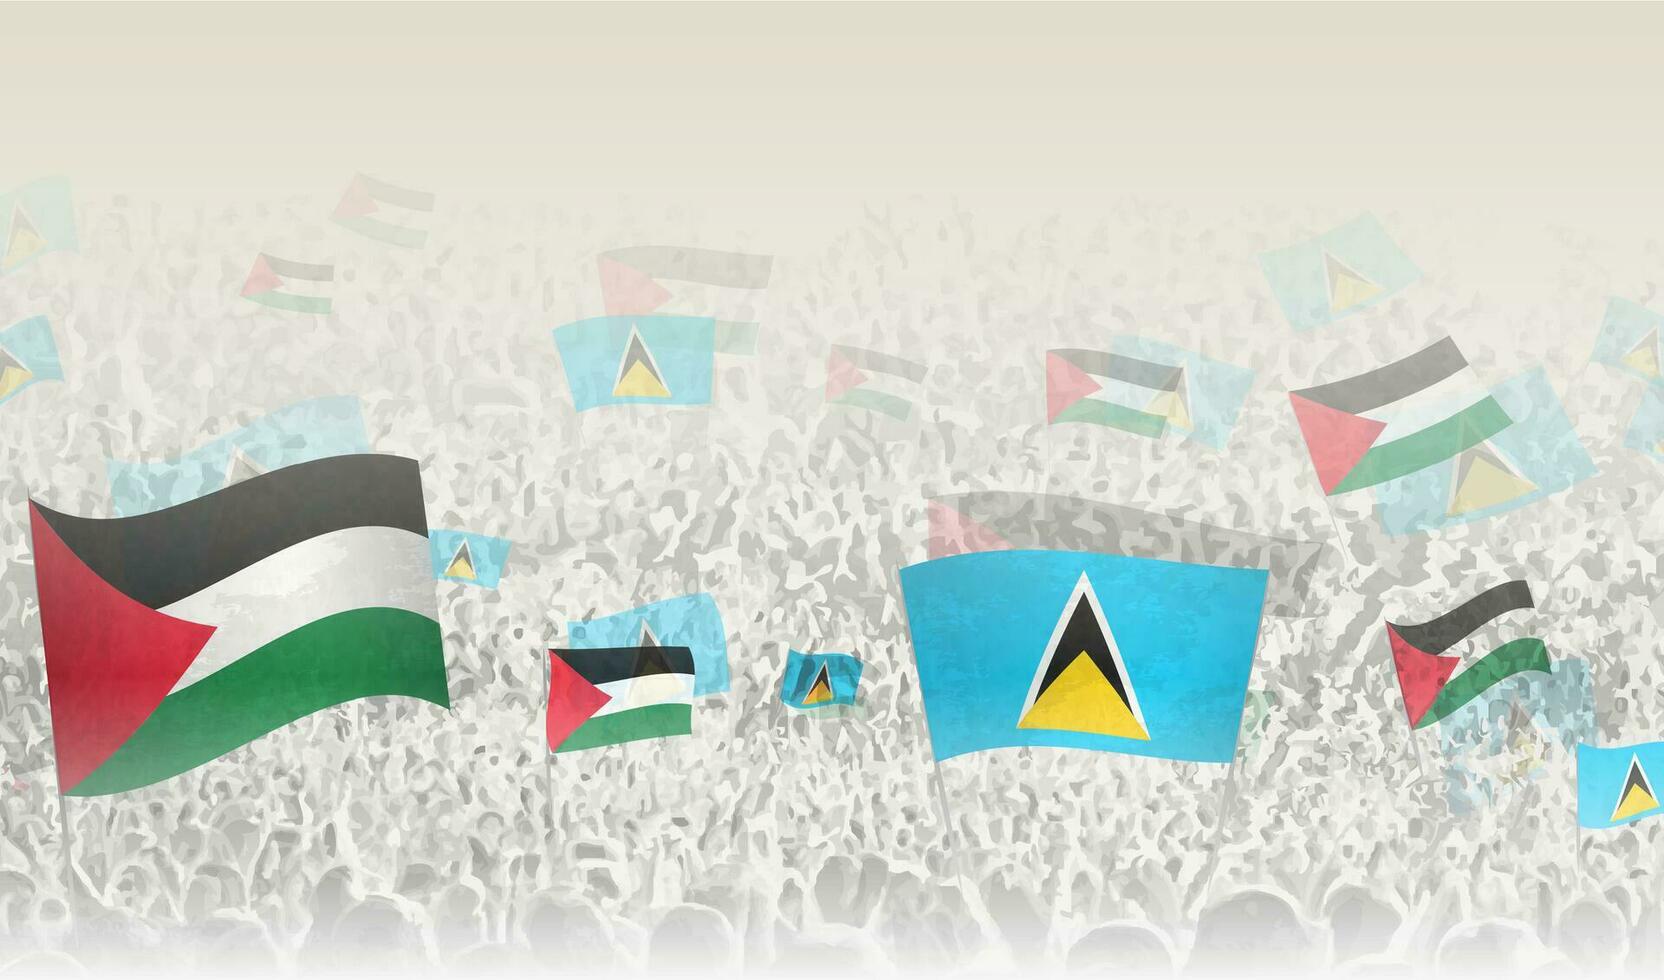 palestina och helgon lucia flaggor i en folkmassan av glädjande människor. vektor